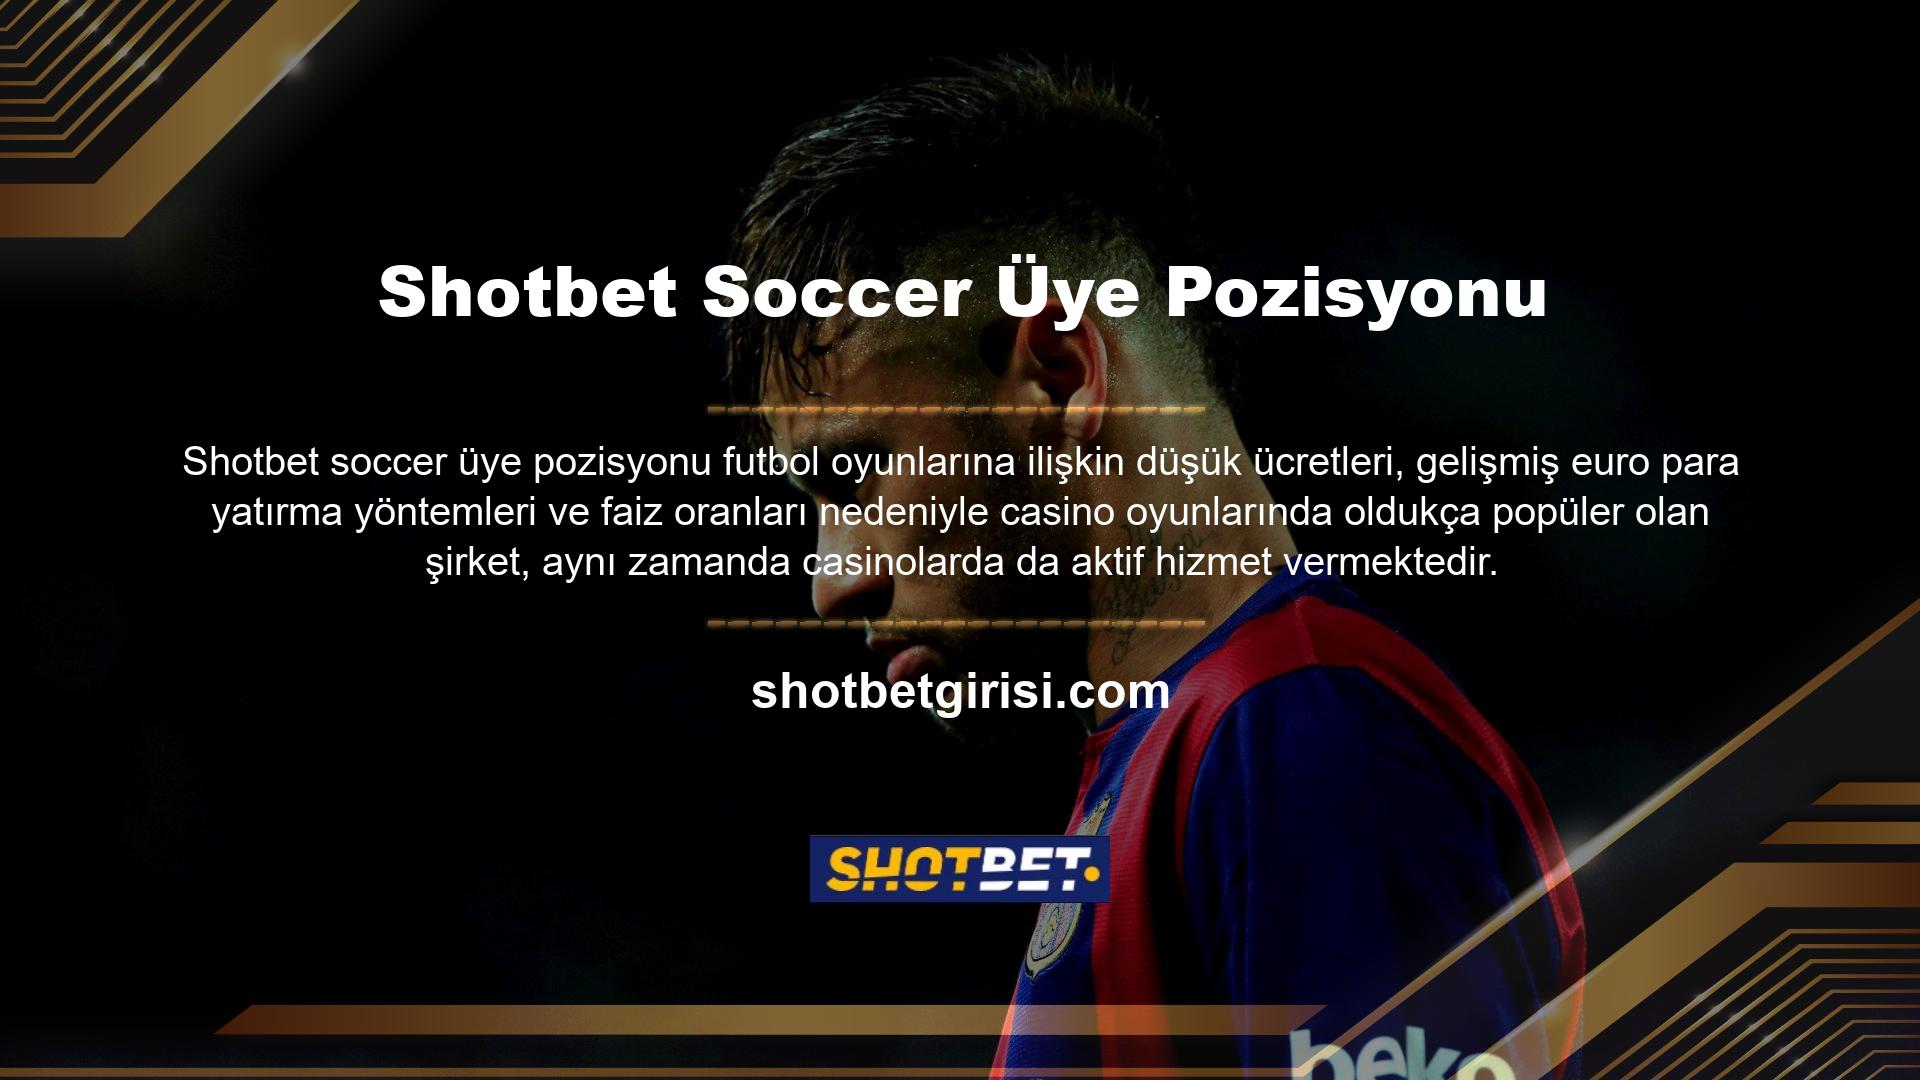 Casino web sitesindeki içeriğin çoğu Shotbet futbol üyelerinin pozisyonlarıdır